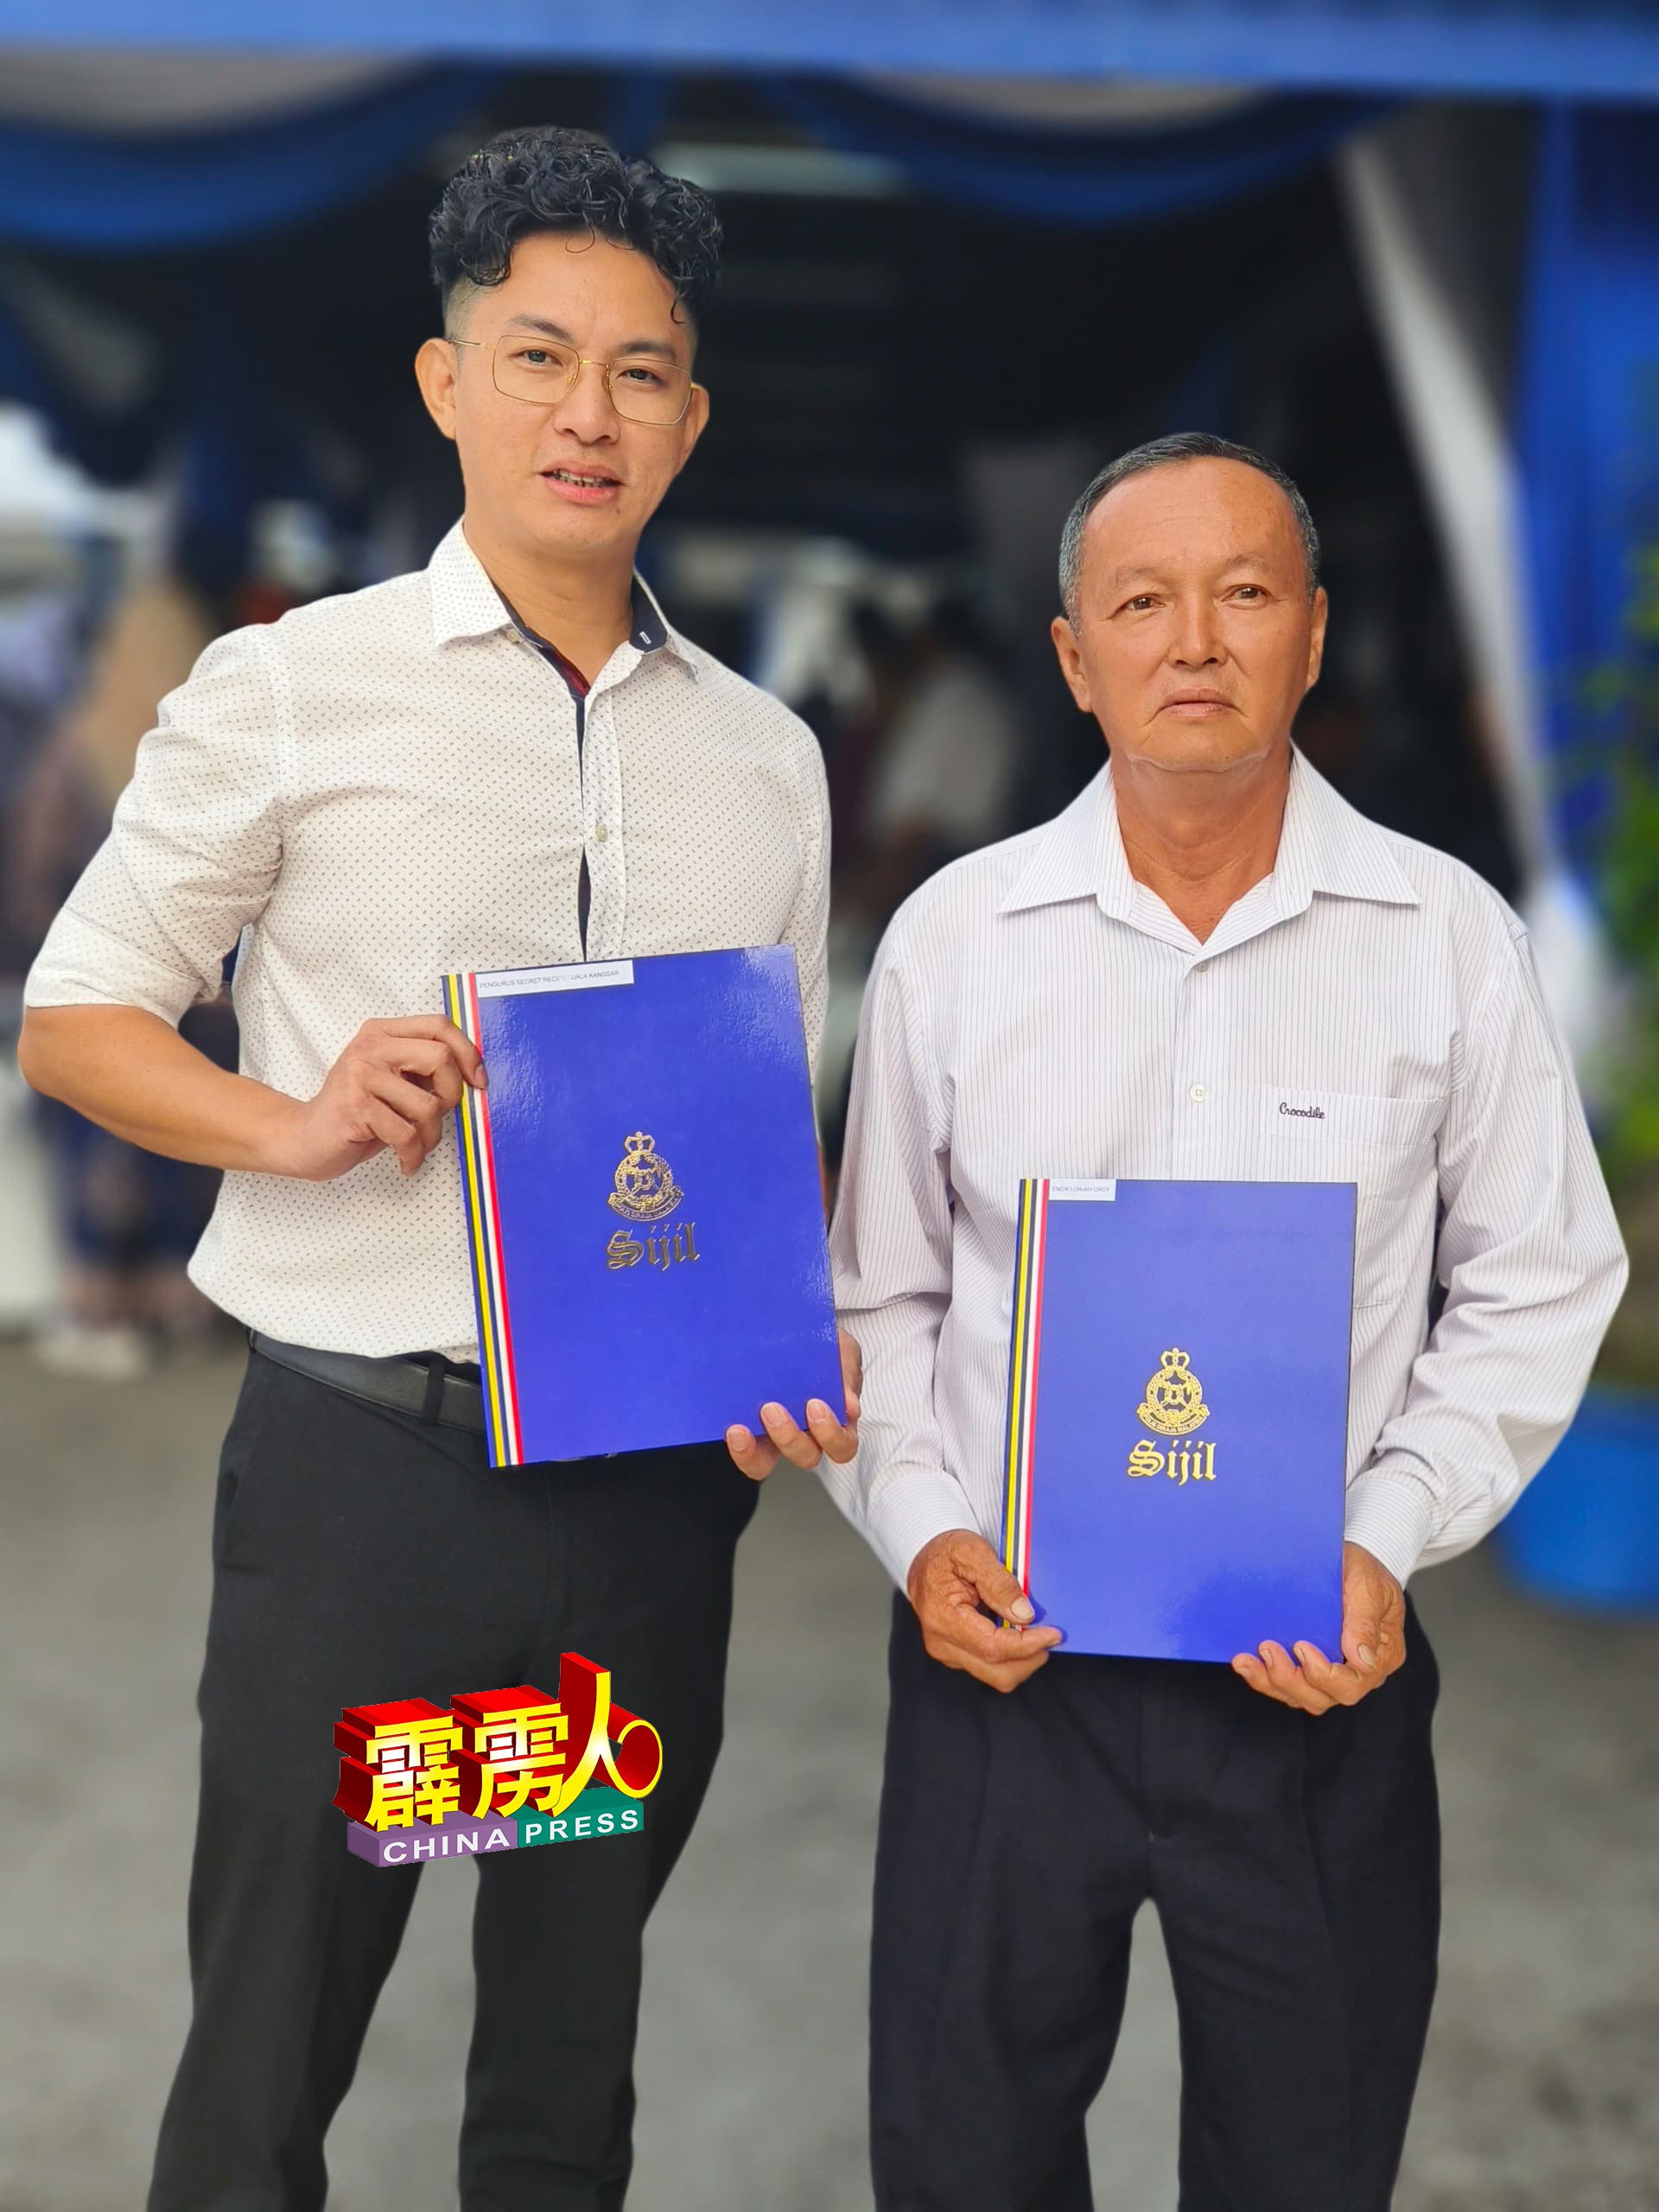 梁敬益（左）与卢德荣（右）是获颁褒扬状的华裔人士。